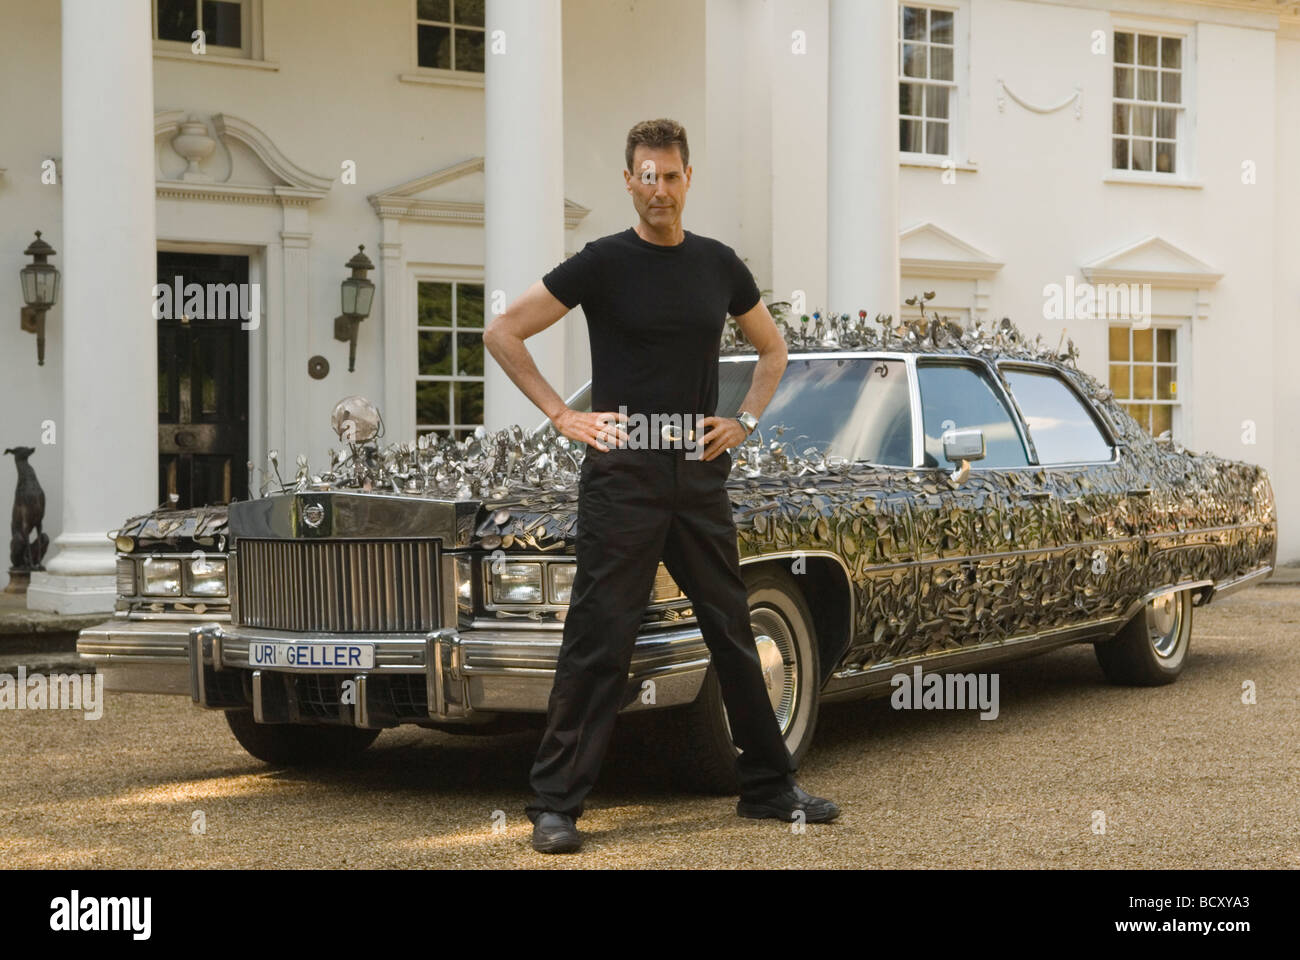 URI Geller en casa fuera de su mansión. Su Cadillac thats cubierto con  cucharas dobladas. URI GELLER de la placa de número de coche. Berkshire UK  2008 2000s HOMER SYKES Fotografía de